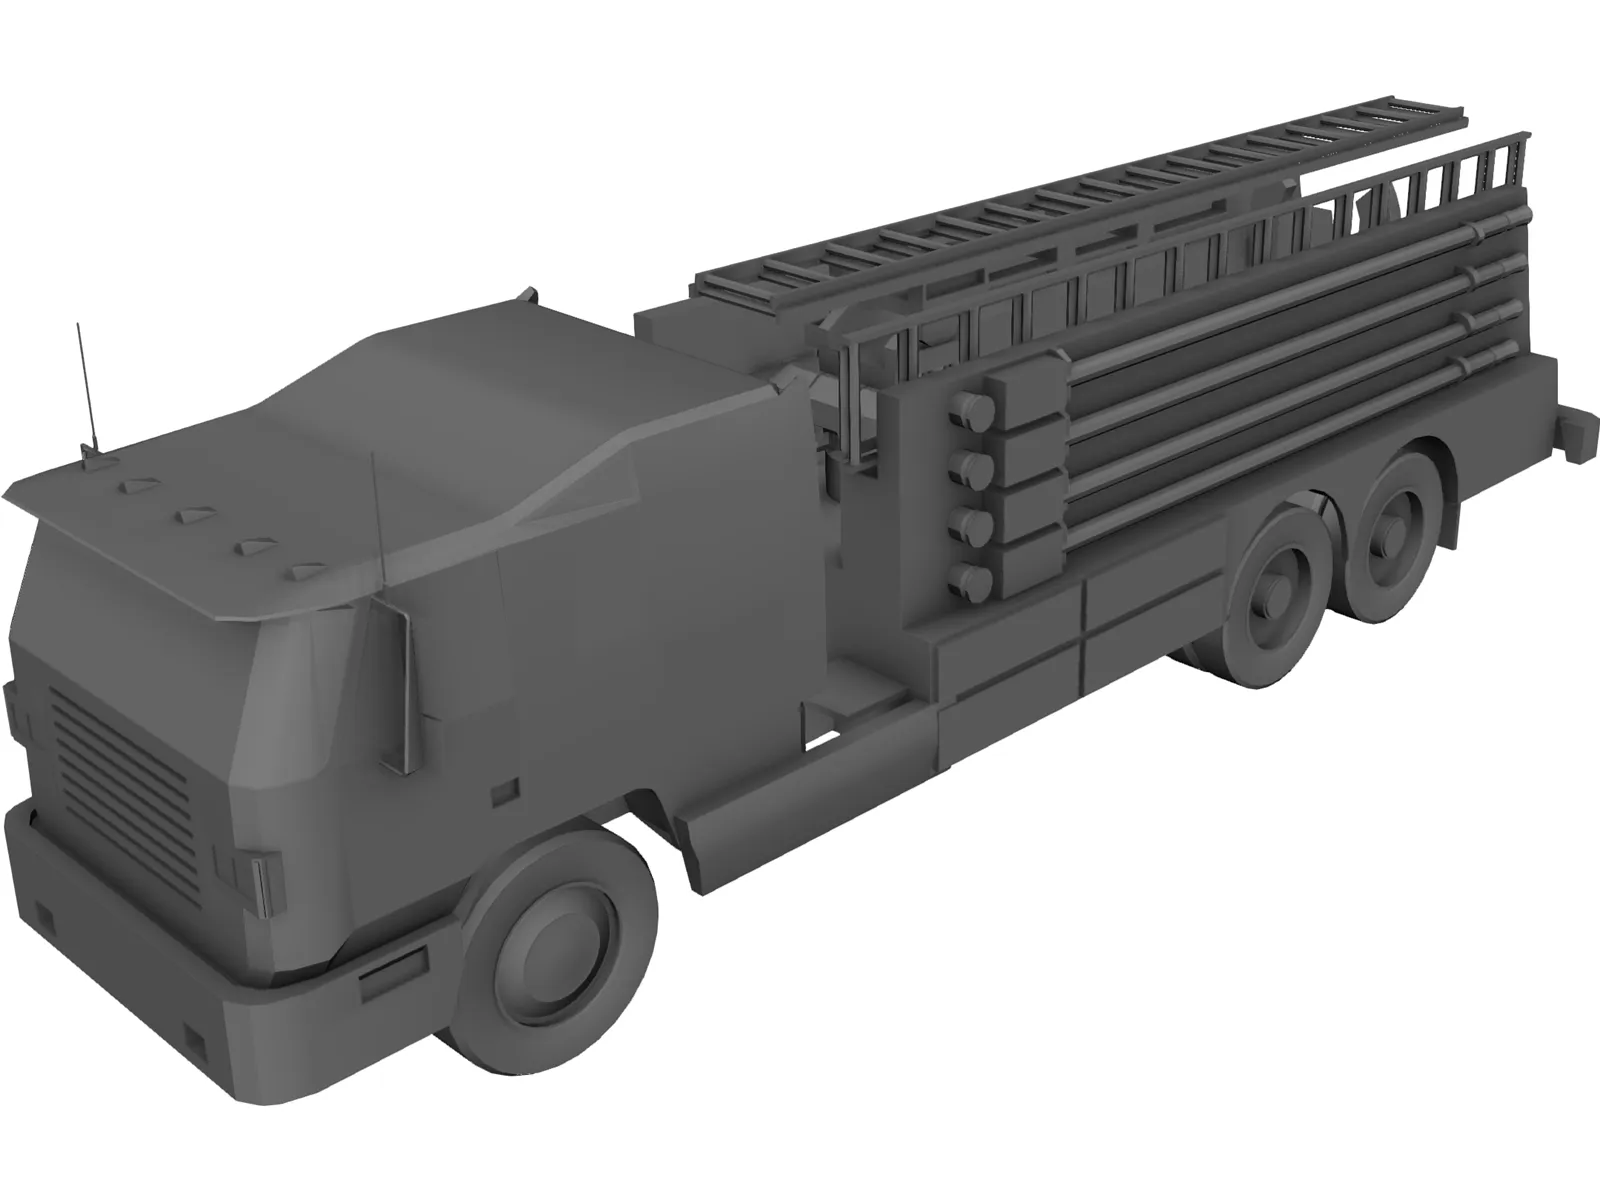 Firetruck 3D Model